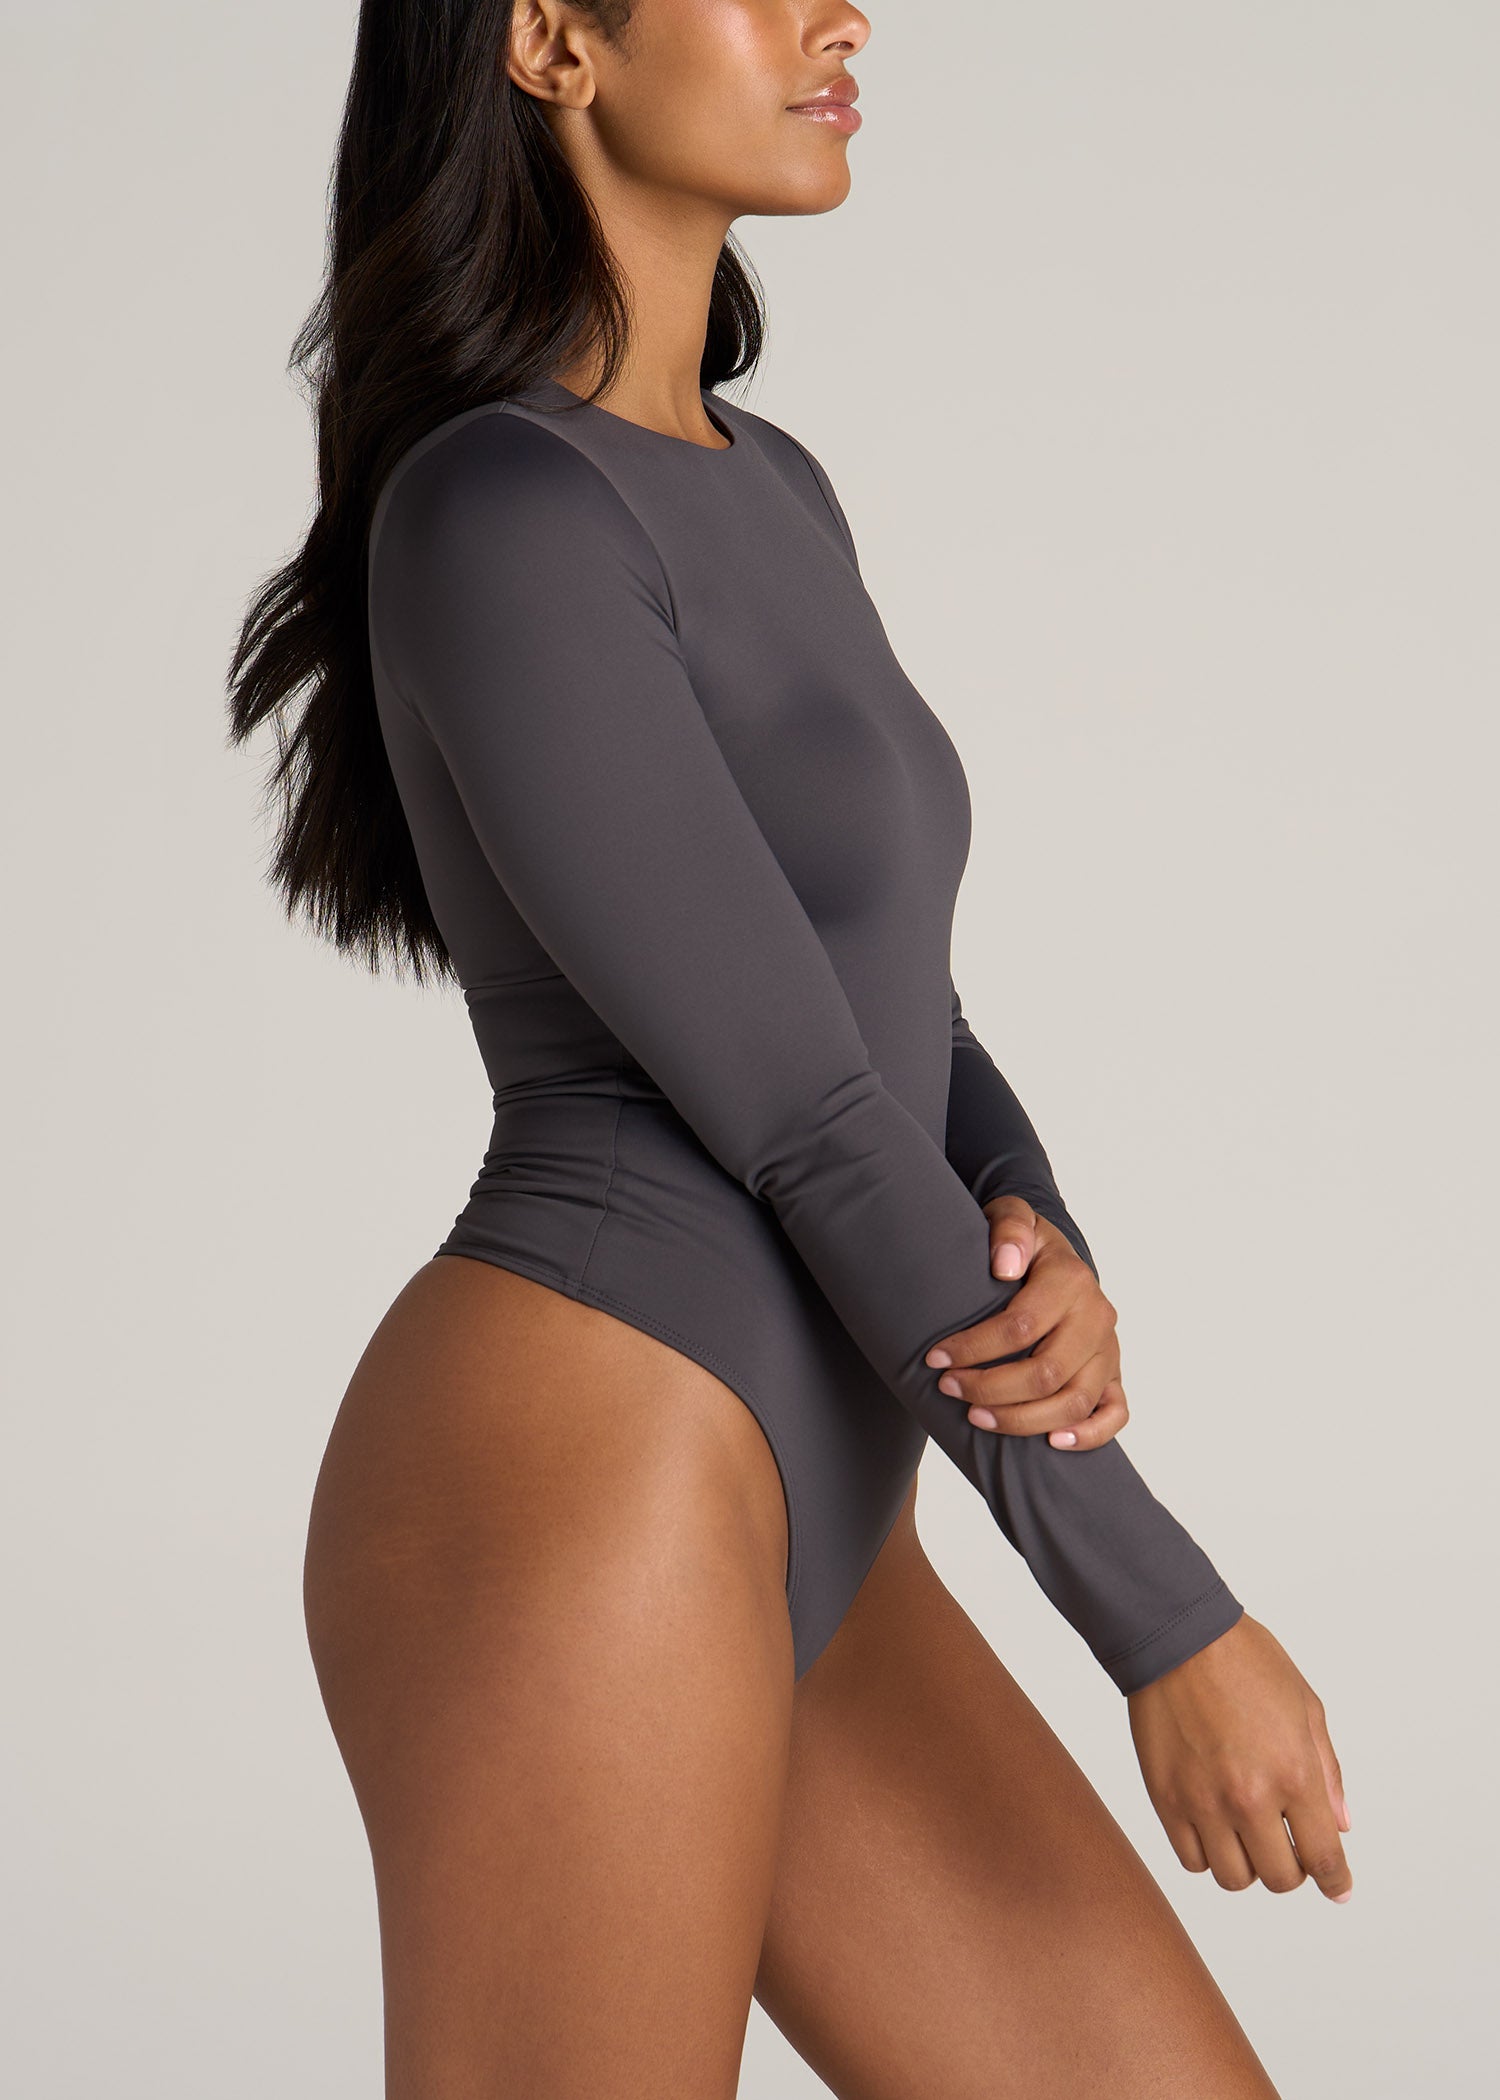 Deep V Neck Bodysuit for Women's Long Sleeve Tops Black XS 